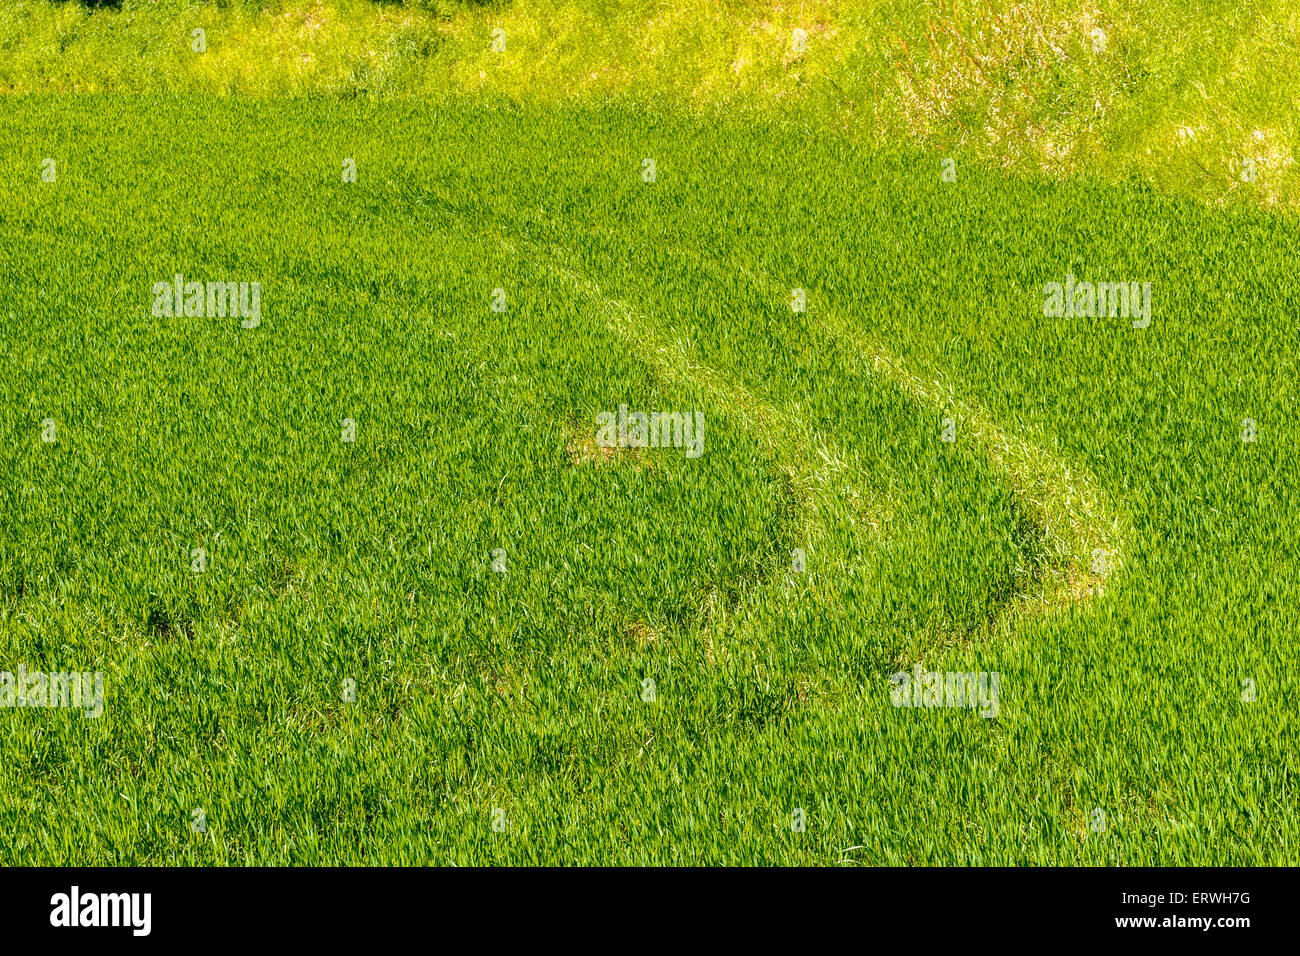 Reifenspuren hinterlassen auf dem grünen Rasen Stockfoto